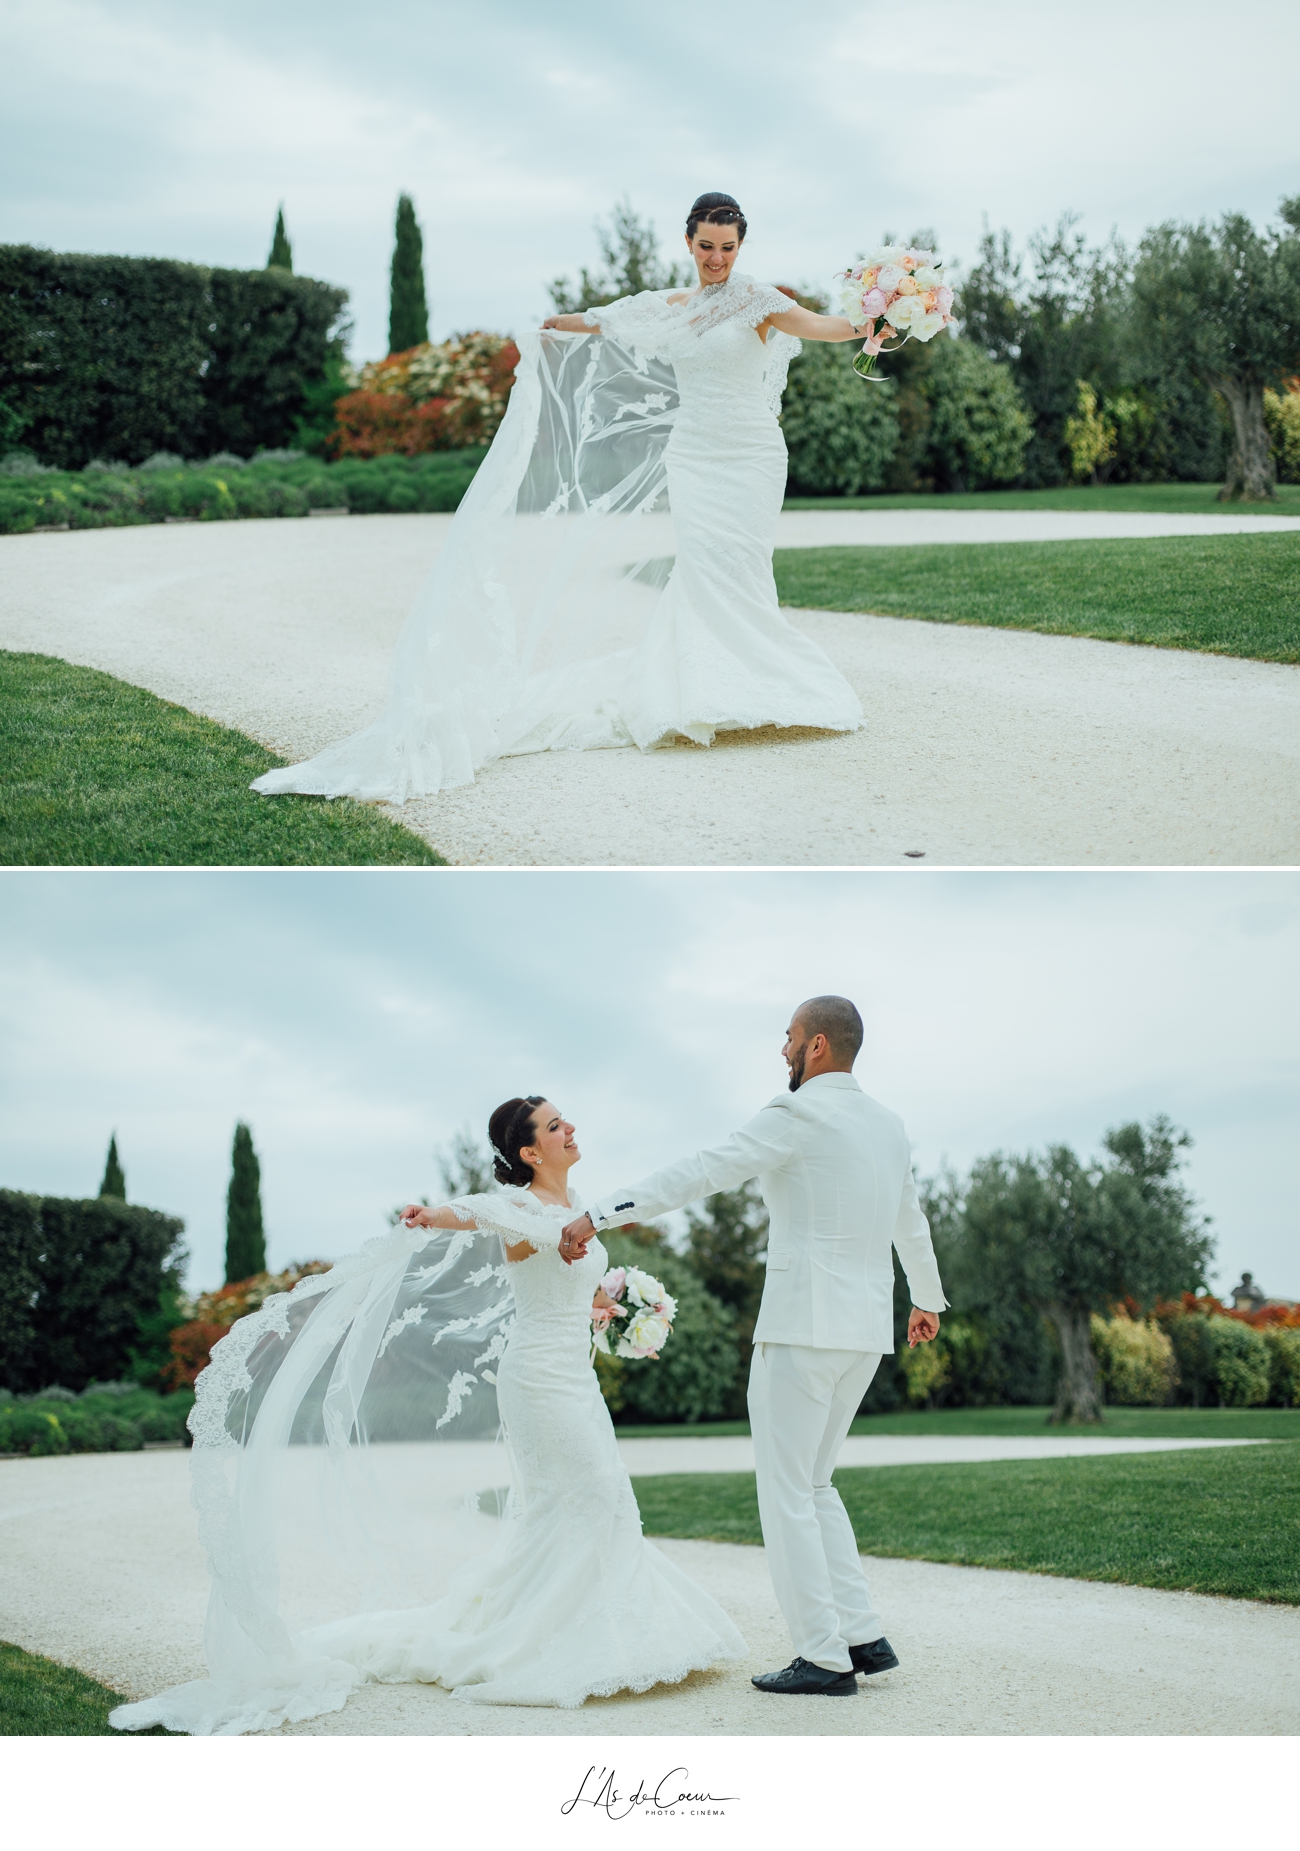 Danse avec la mariée photo couple ©lasdecoeur